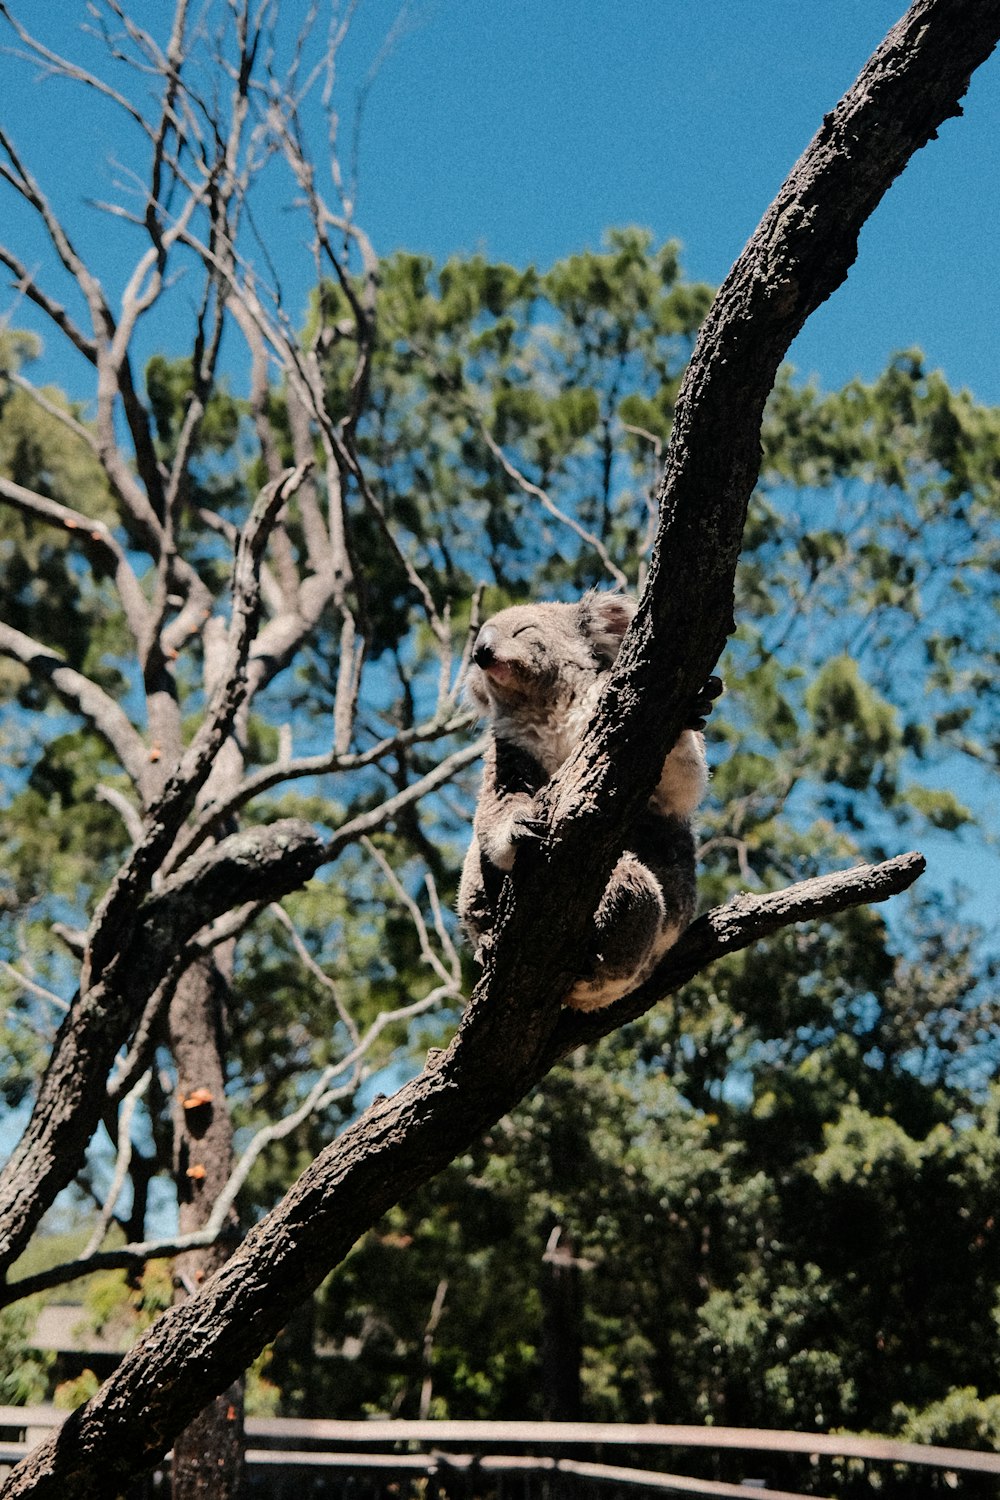 a koala sitting on a tree branch in a zoo